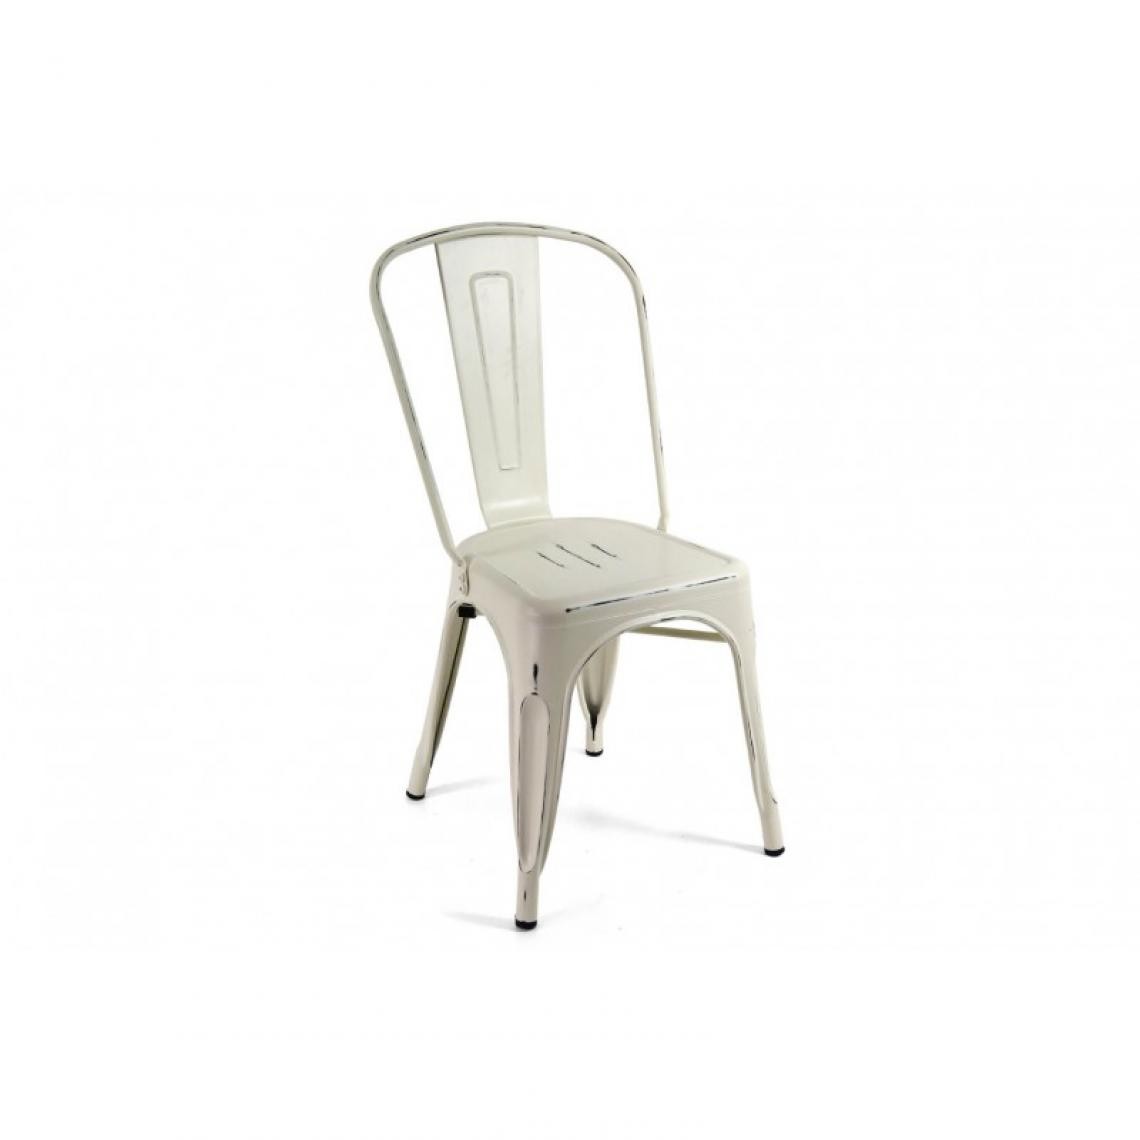 Webmarketpoint - Chaise de cuisine vintage urbaine industrielle en métal blanc - Chaises